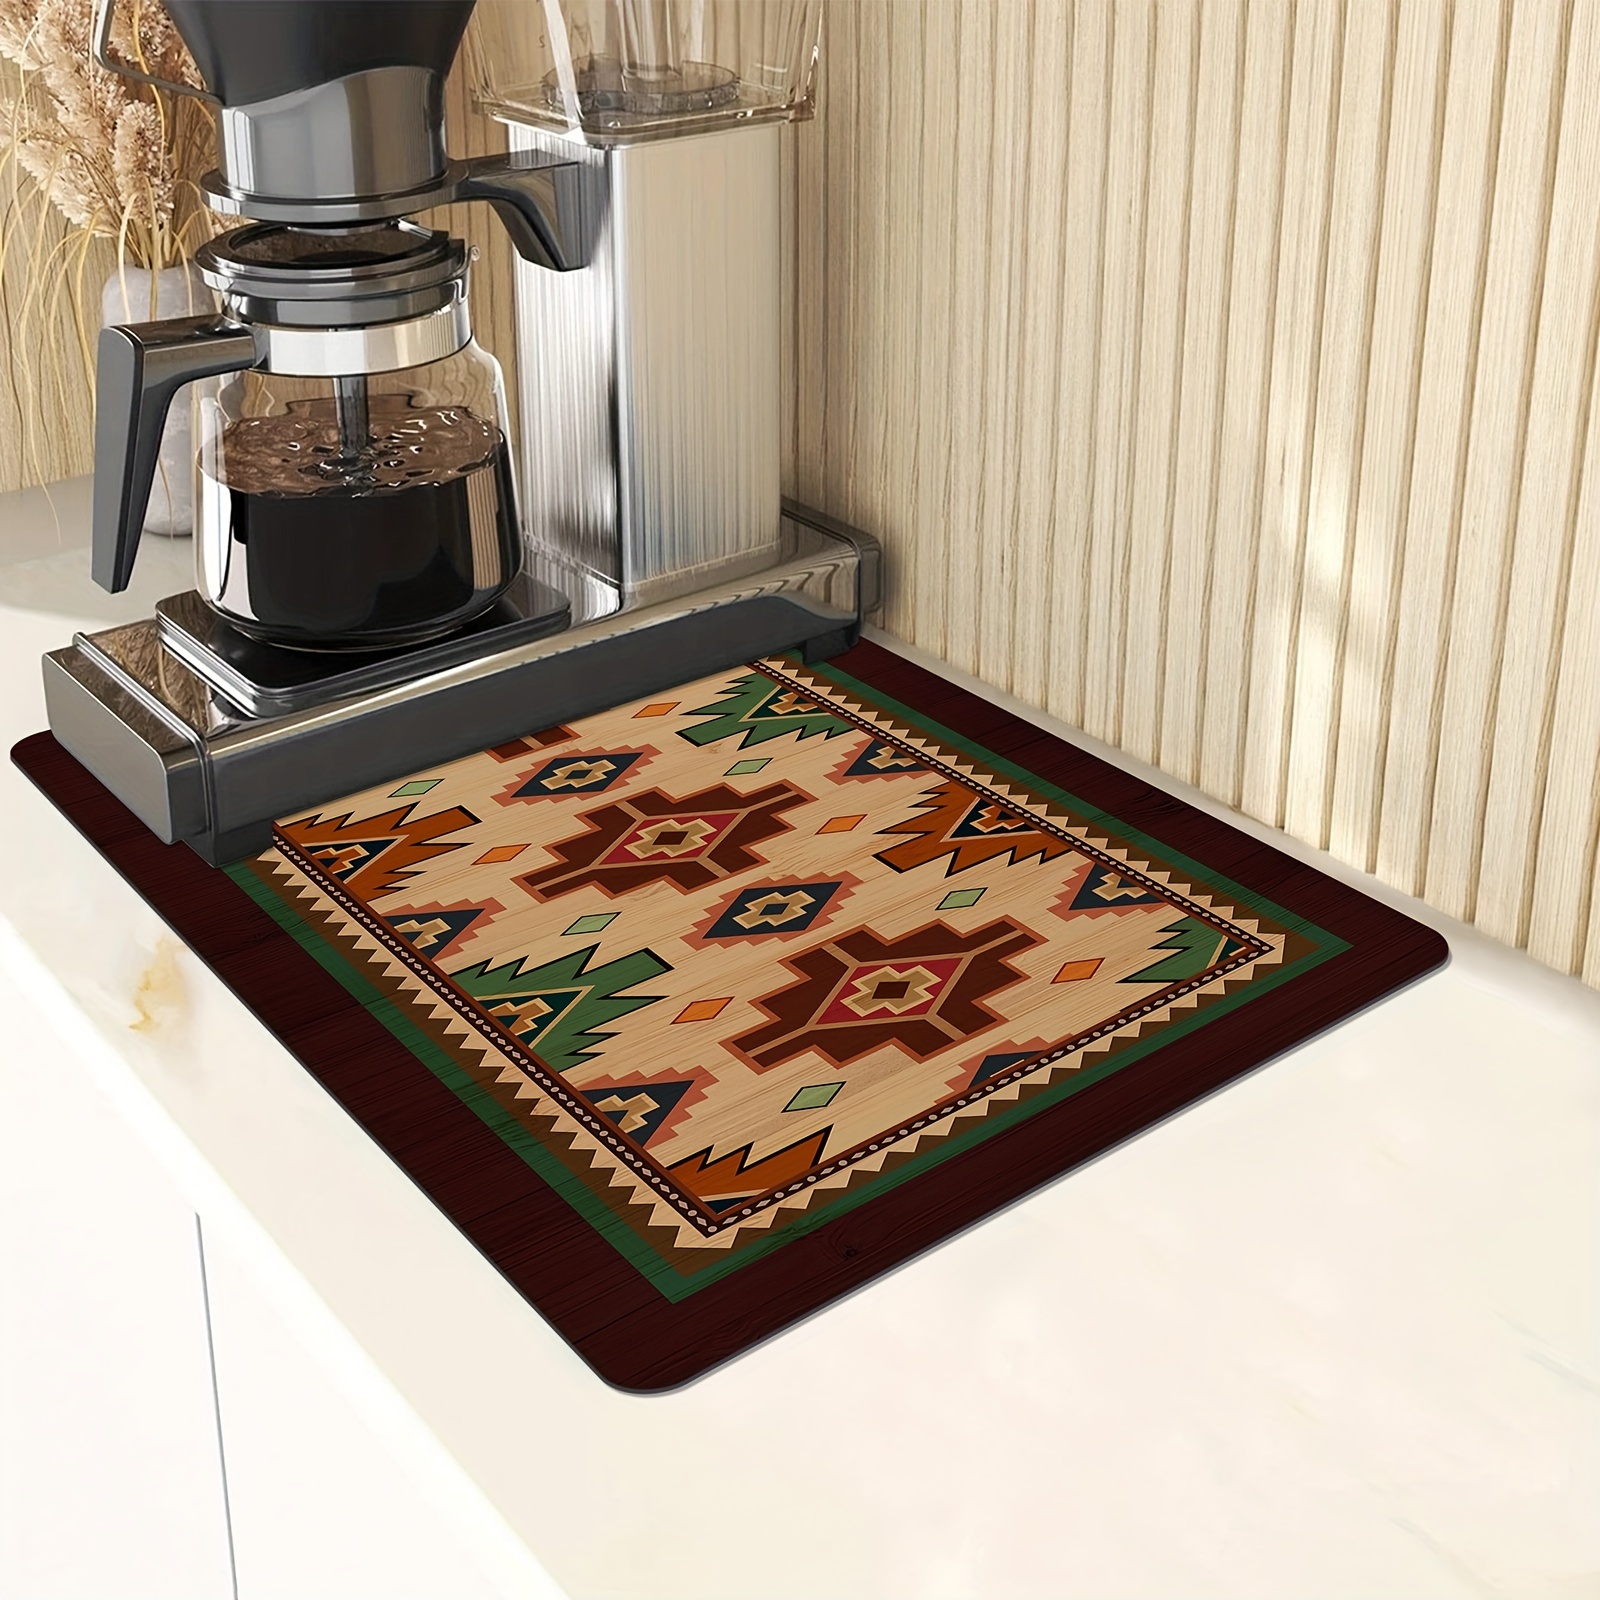 Grey Mandala Print Dish Drying Mat. Kitchen Dish Mat. – Home Stitchery Decor